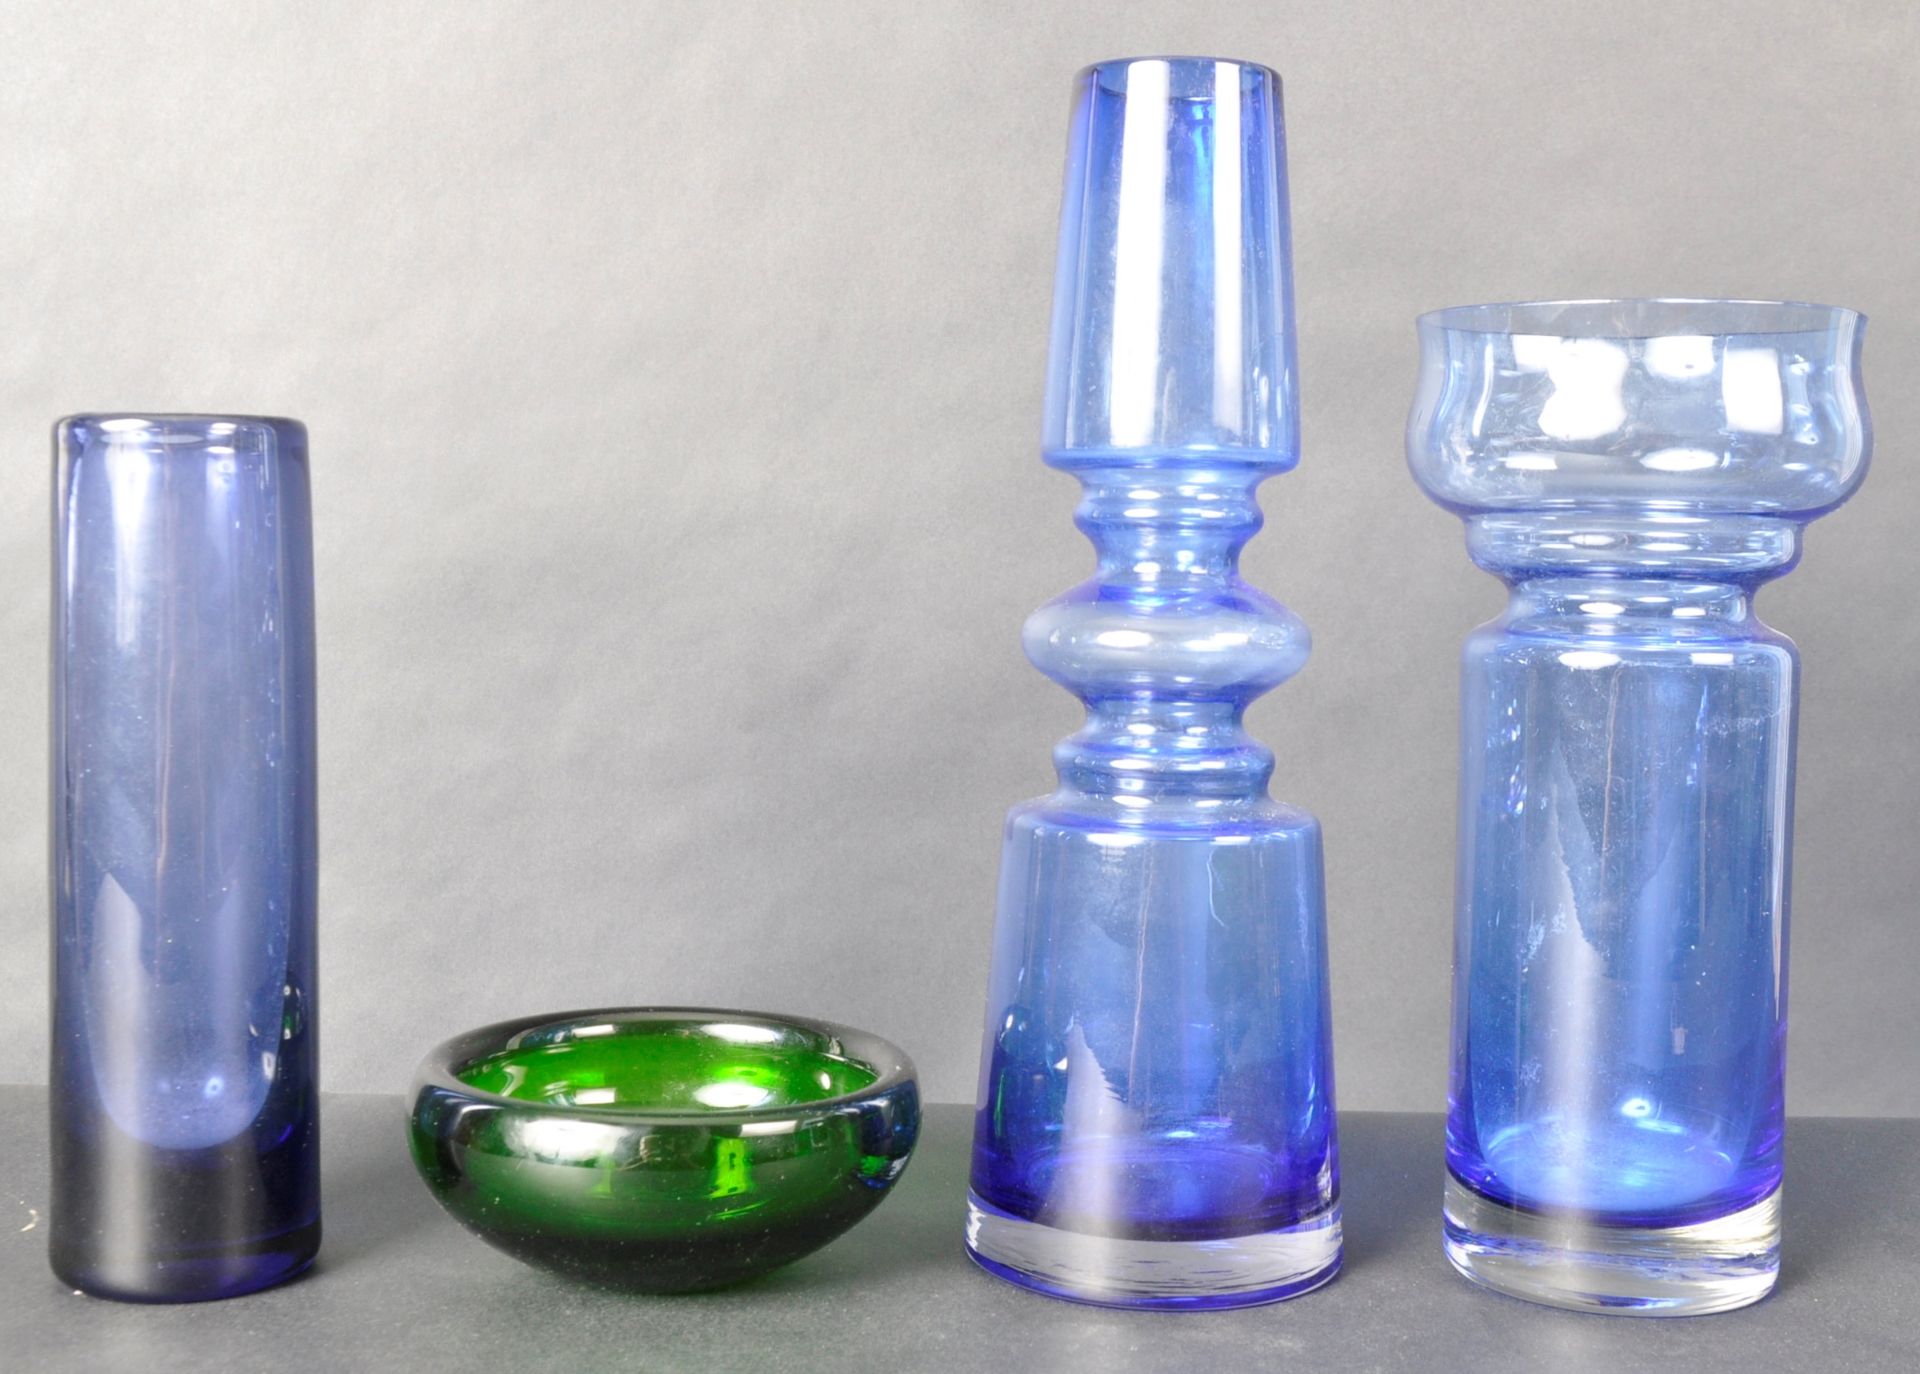 A COLLECTION OF SCANDINAVIAN STUDIO ART GLASS